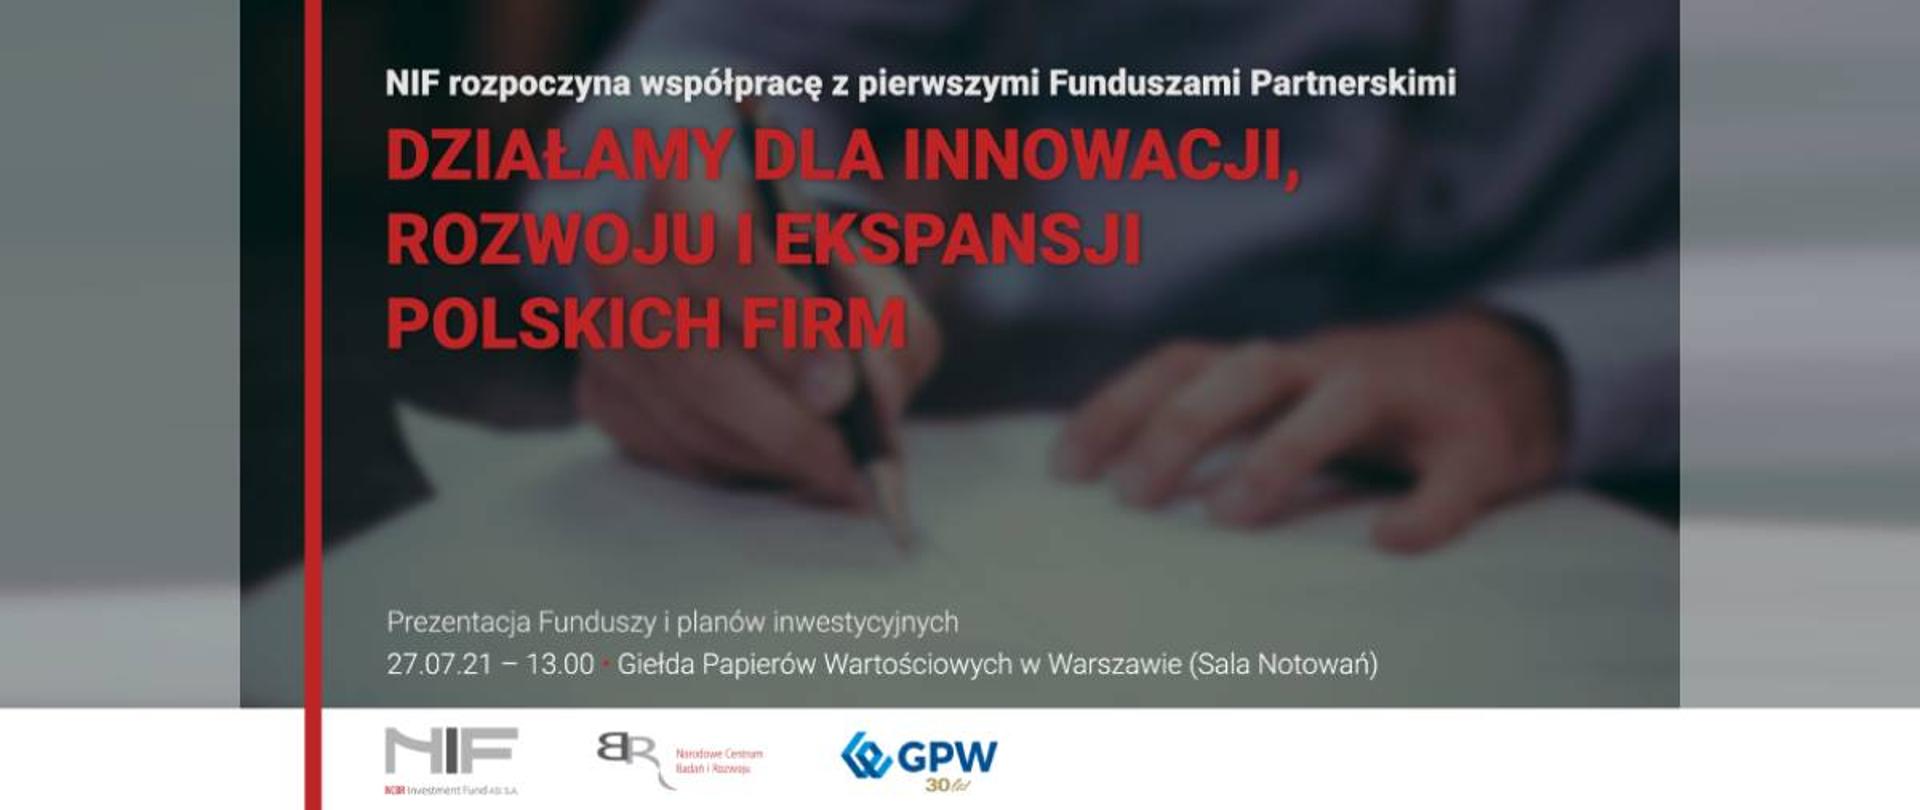 NIF rozpoczyna współpracę z pierwszymi Funduszami Partnerskimi. Działamy dla innowacji, rozwoju i ekspansji polskich firm